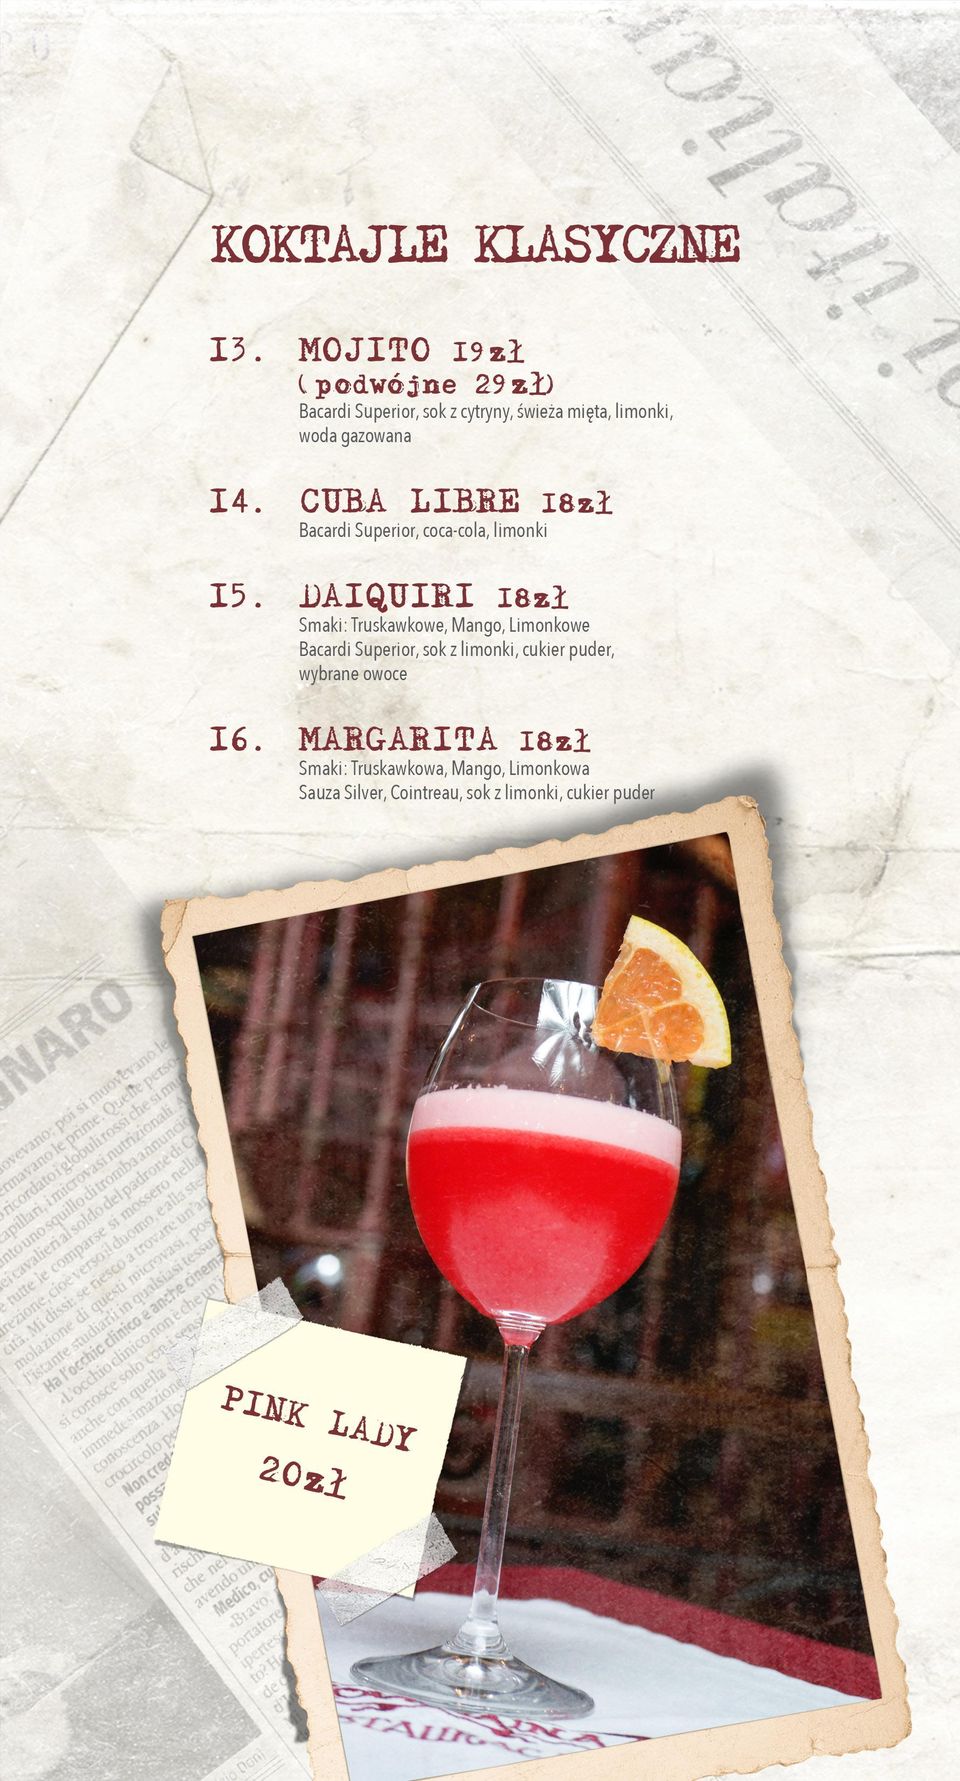 CUBA LIBRE 18zł Bacardi Superior, coca-cola, limonki 15.